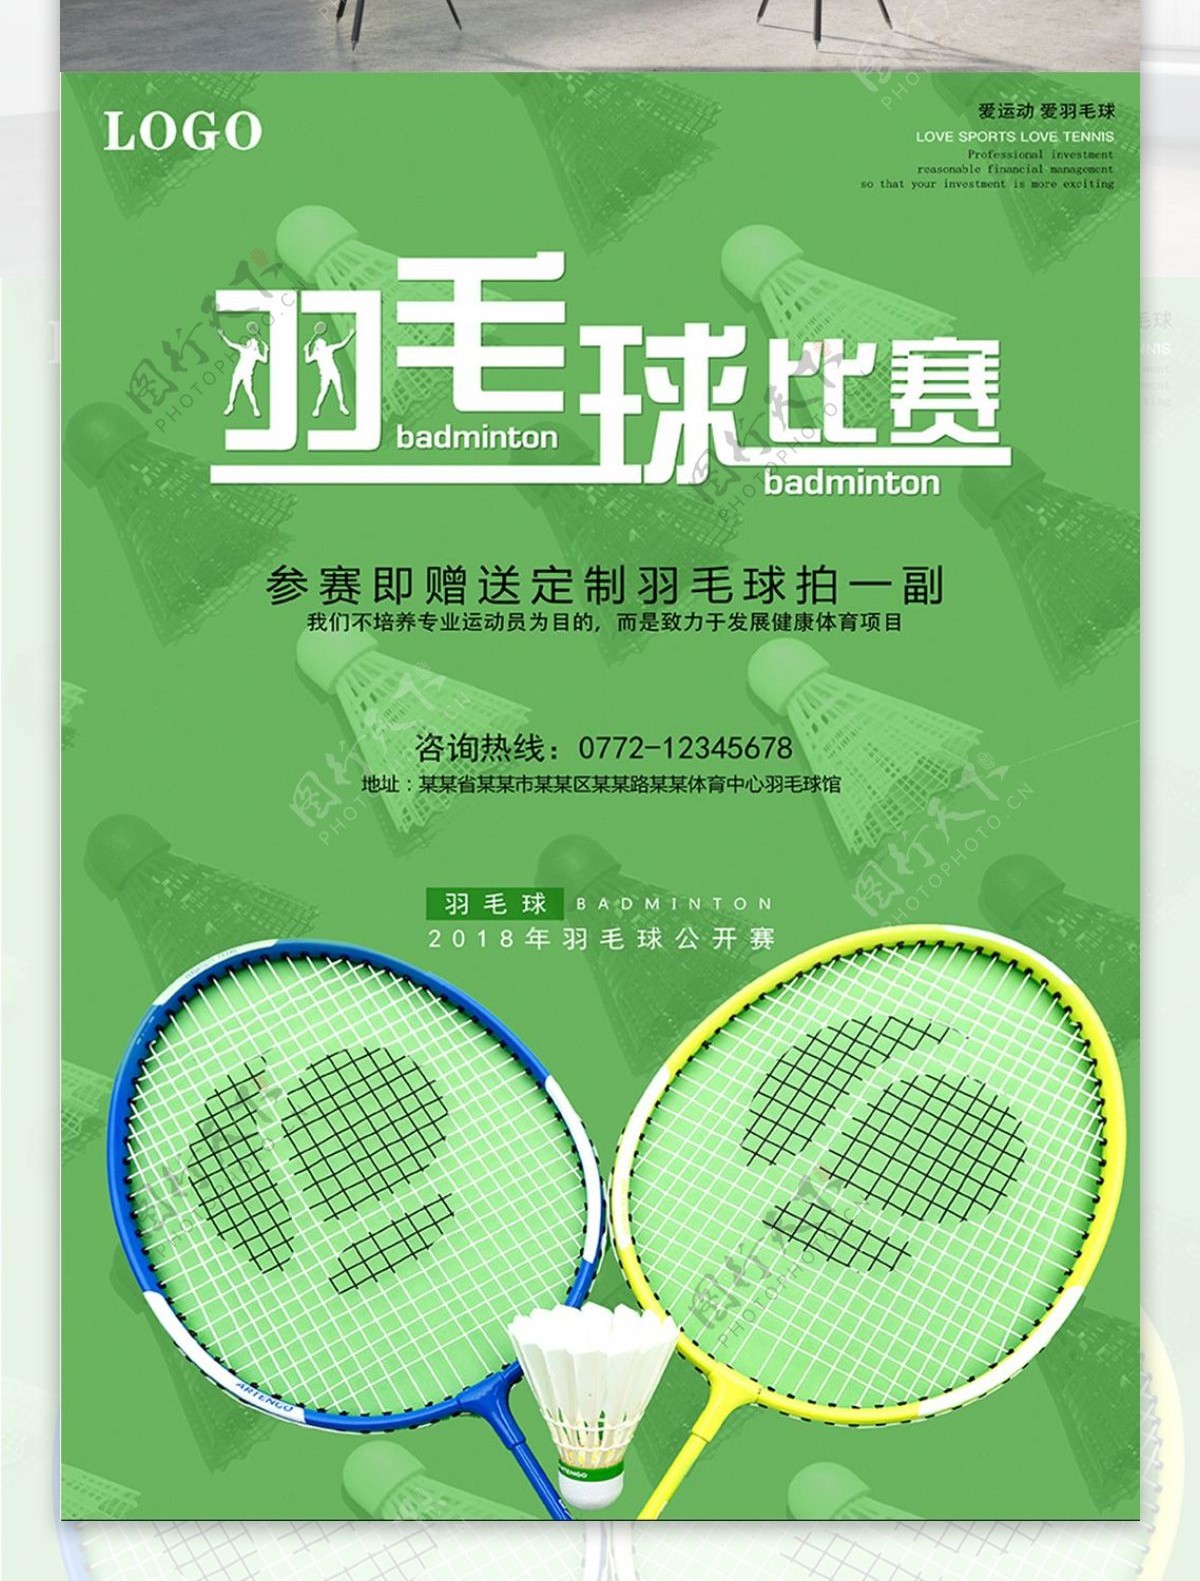 绿色球场气息羽毛背景羽毛球比赛海报设计